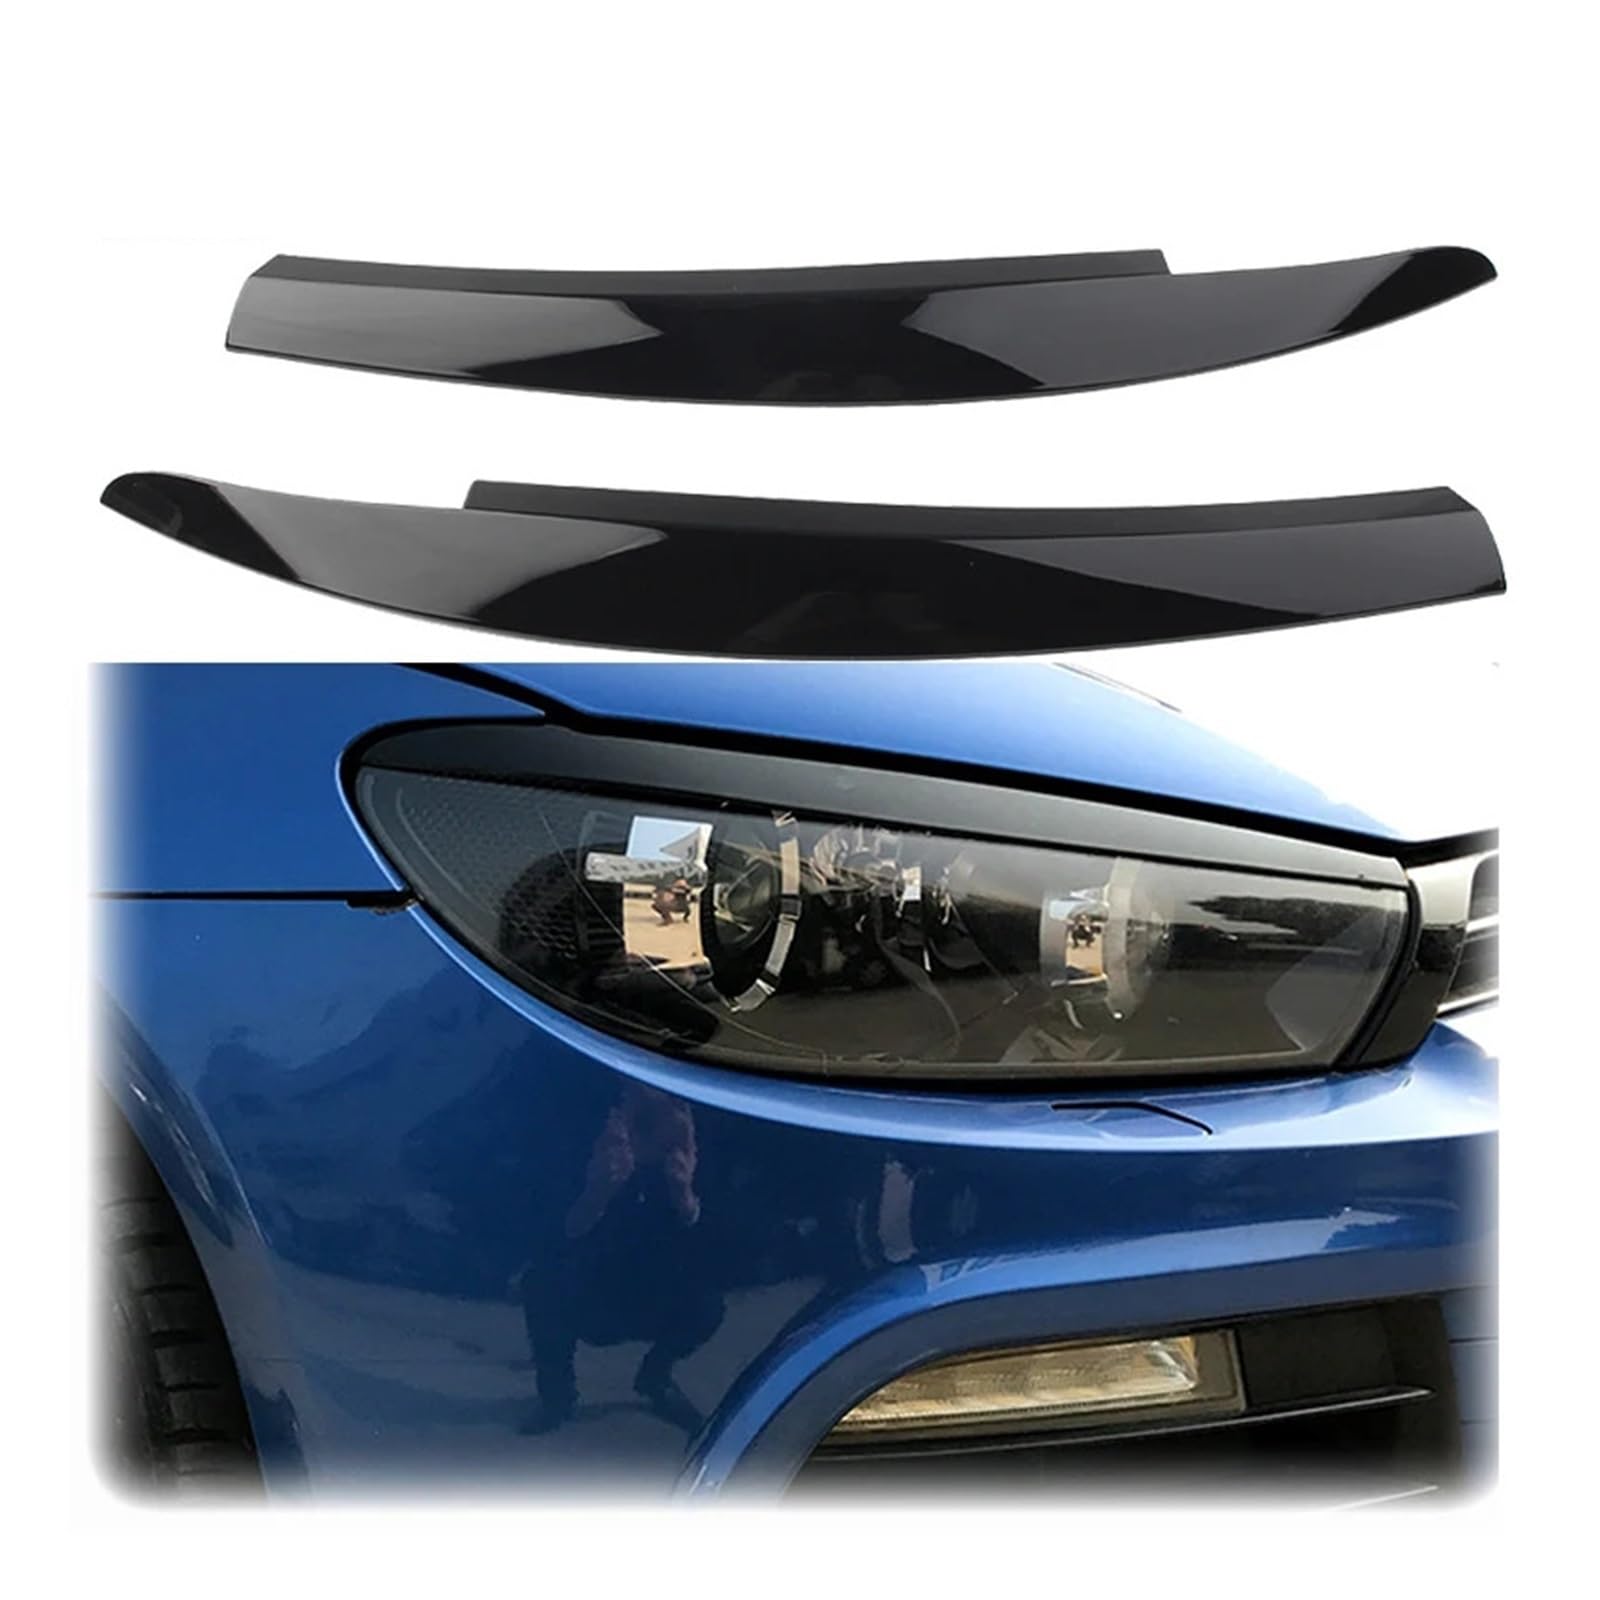 AIJIAMAN Autoscheinwerfer-Lampenaugenbrauenaufkleber passend for VW Scirocco 2007 bis 2018, glänzend schwarze Kohlefaser-Augenlidabdeckungsverkleidung von ABS vorne Automobil-Augenlider(Glossy Black) von AIJIAMAN